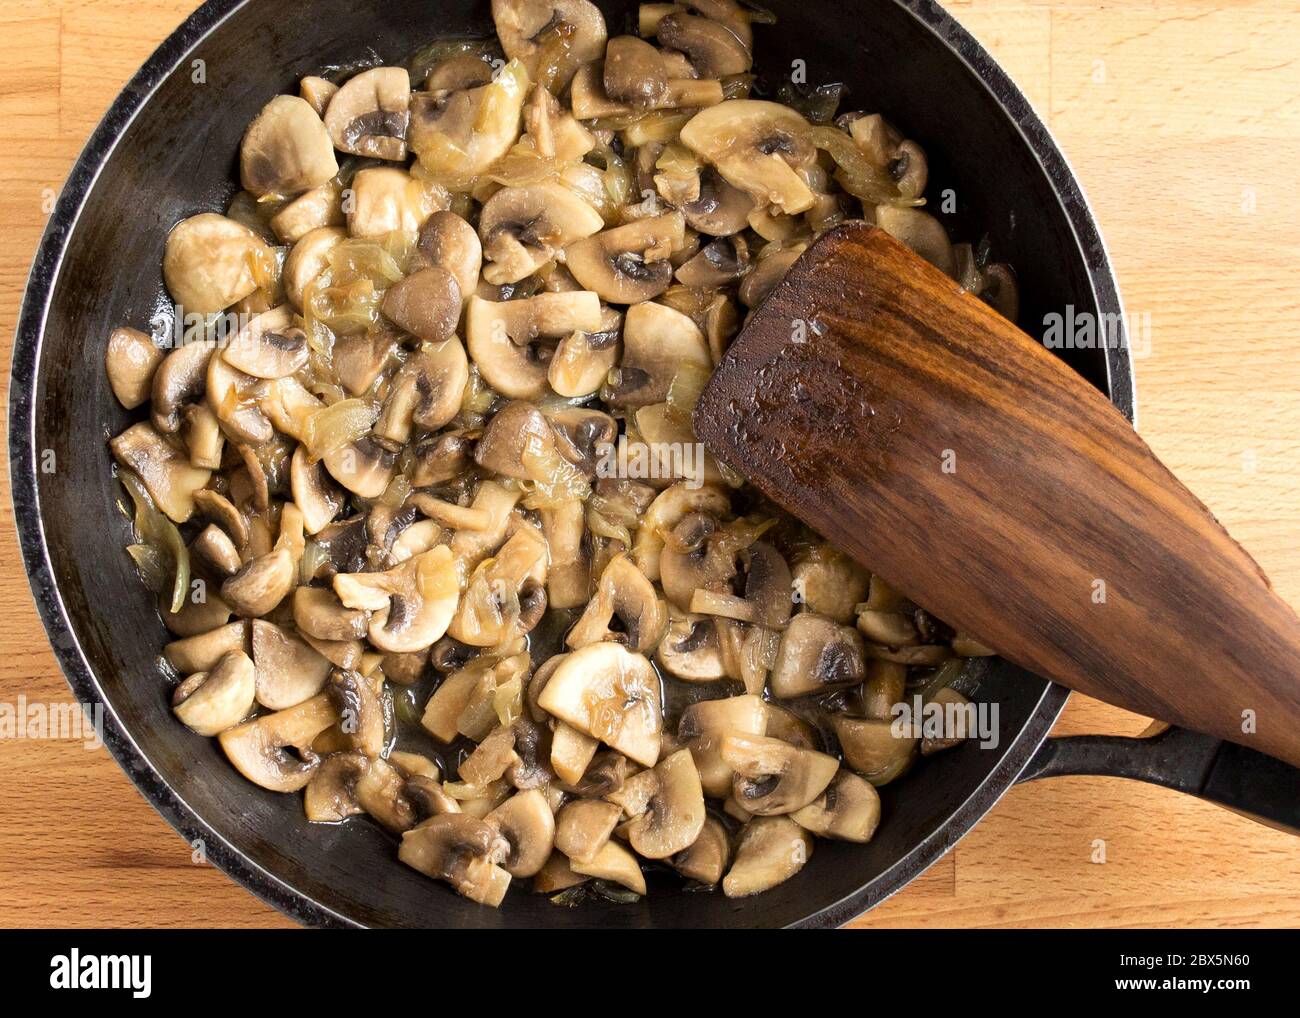 Préparer les champignons et les oignons dans une casserole noire. Faire sauter les champignons et les légumes dans l'huile. Vue de dessus sans personnes. Banque D'Images